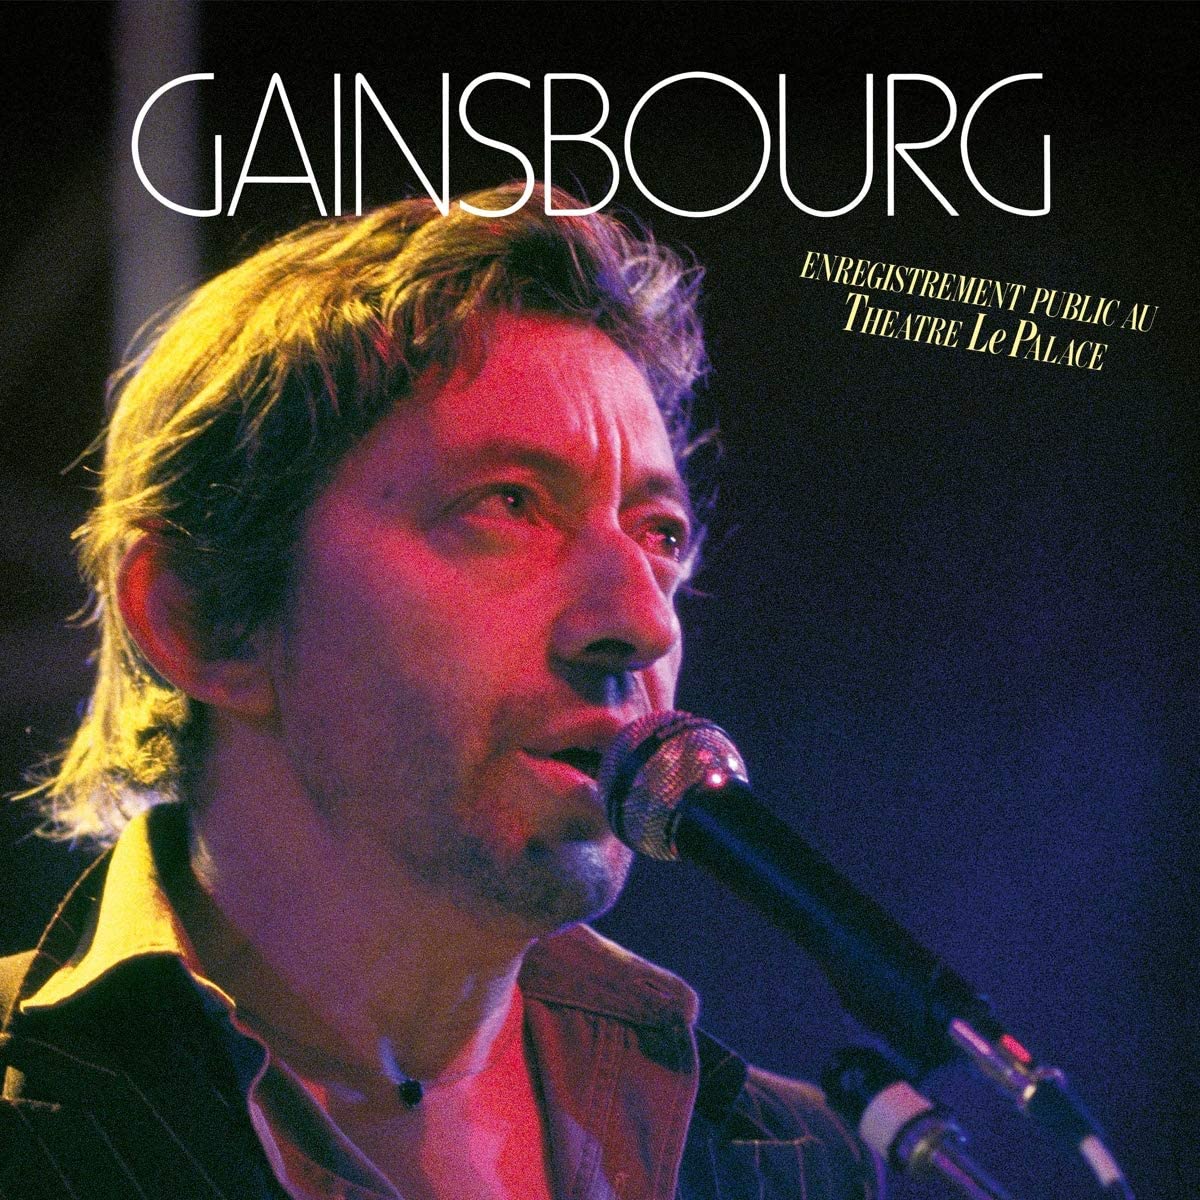 Gainsbourg, Serge/Enregistrement Public Au Theatre Le Palace [LP]